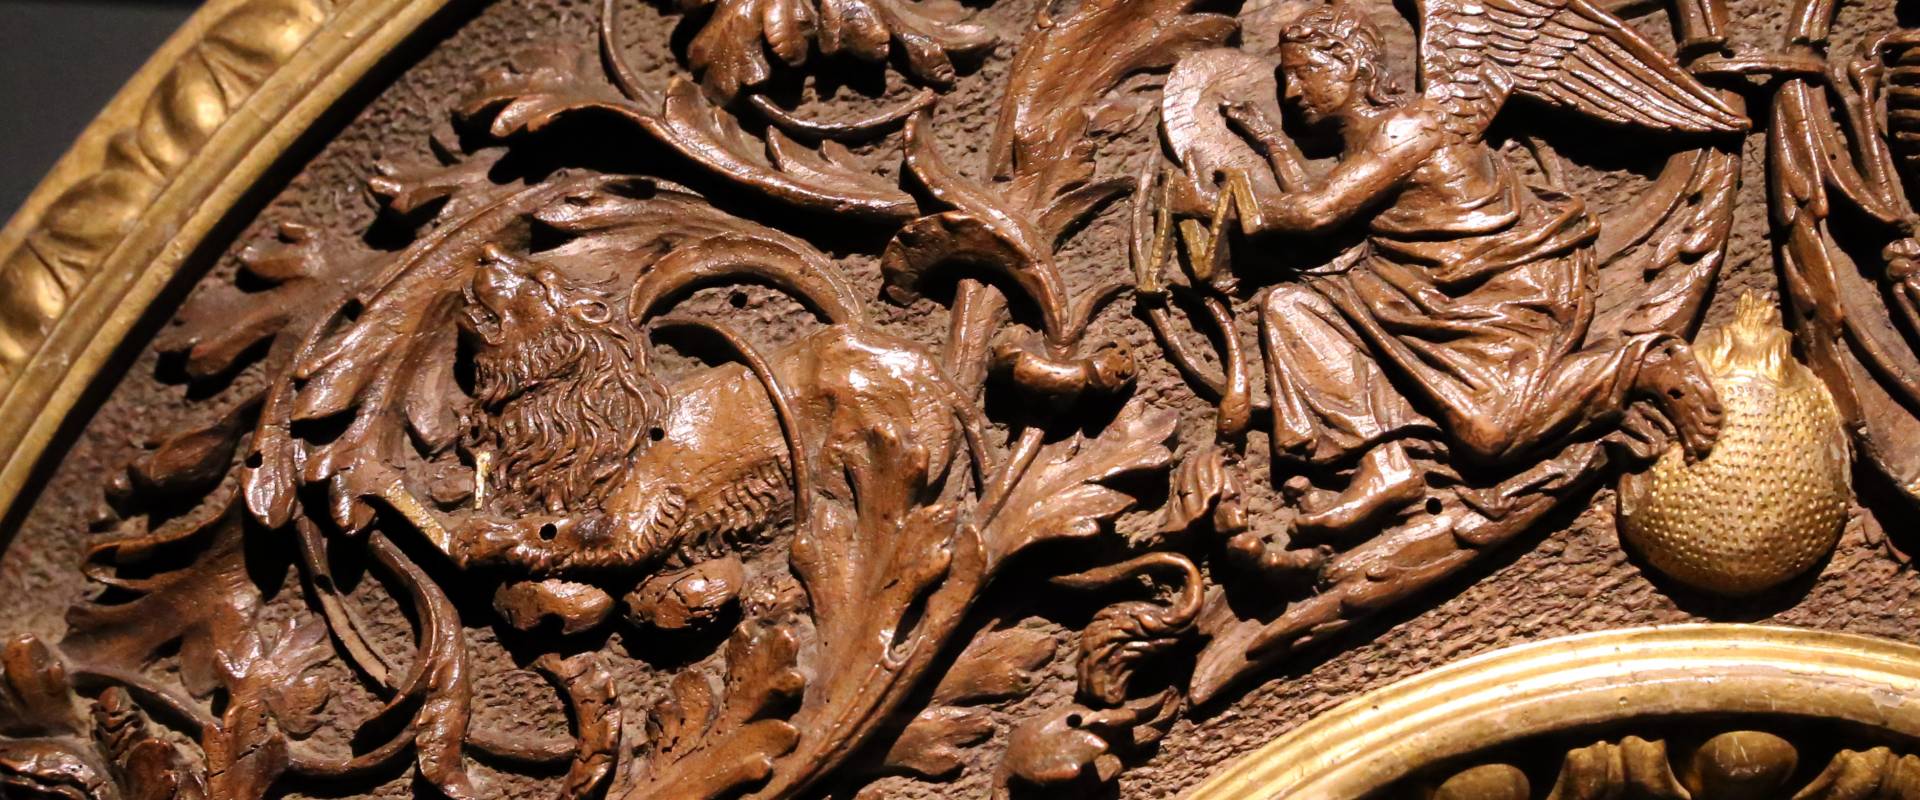 Intagliatore attivo a ferrara, cornice per specchio, 1505-10 ca. (v&amp;a) 03 angelo e leone foto di Sailko